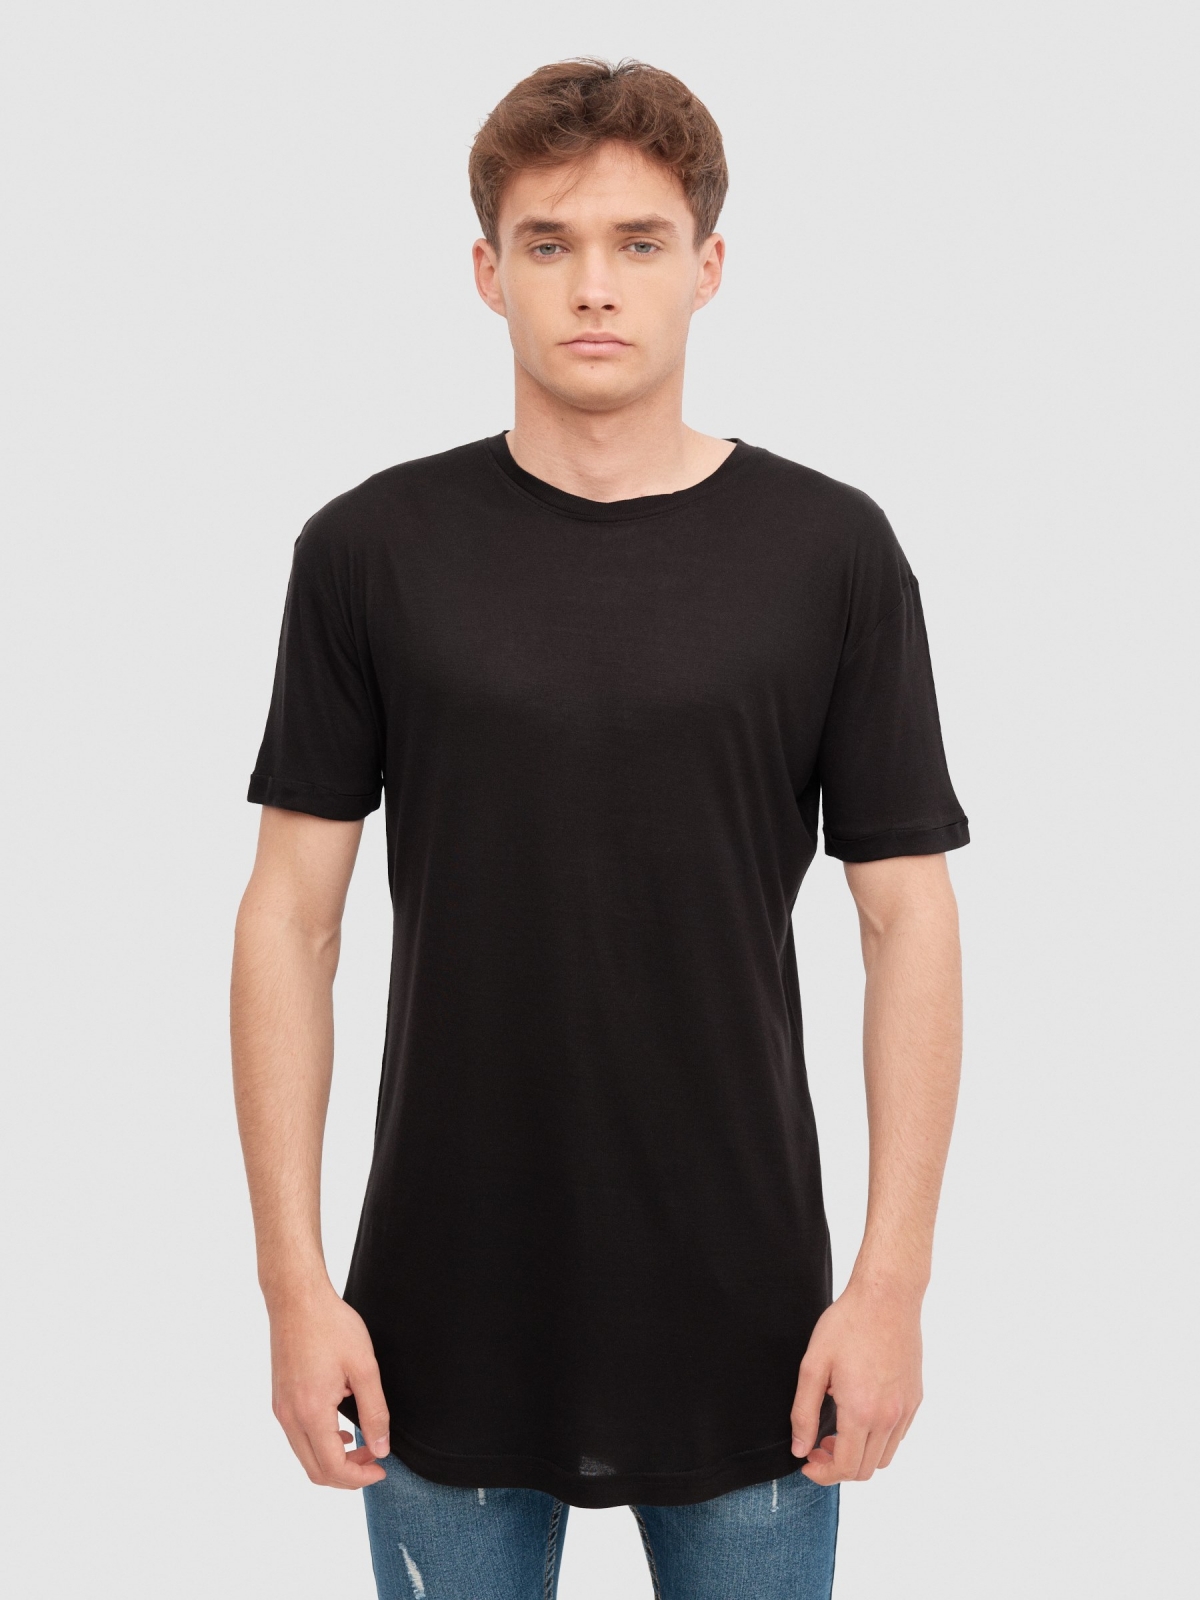 Camiseta larga básica negro vista media frontal